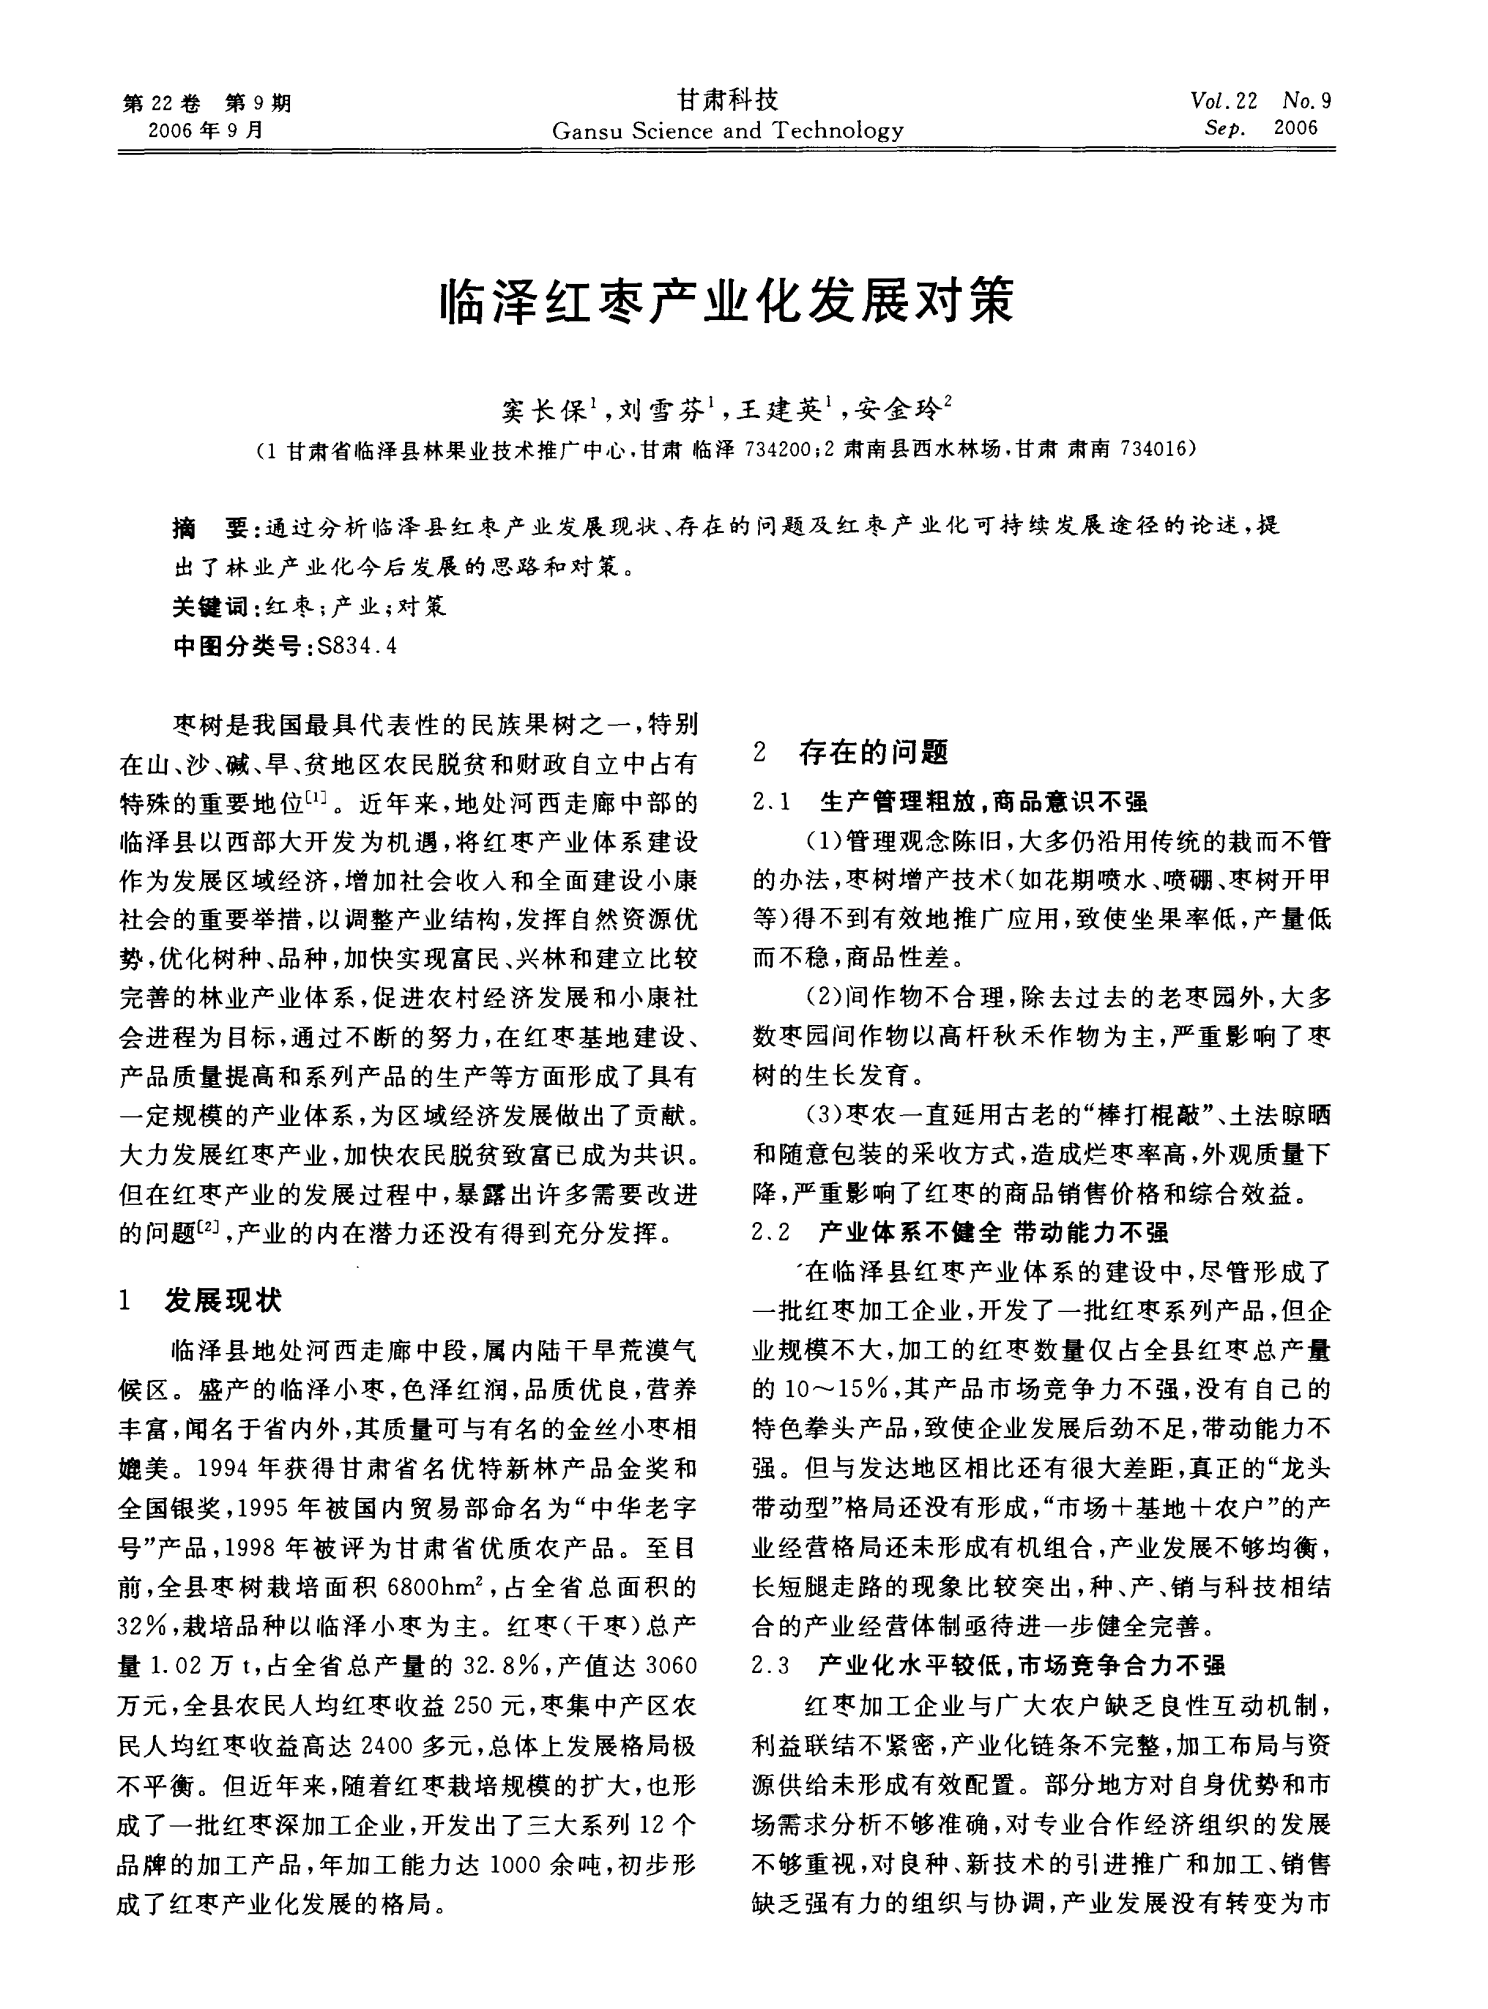 临泽红枣产业化发展对策